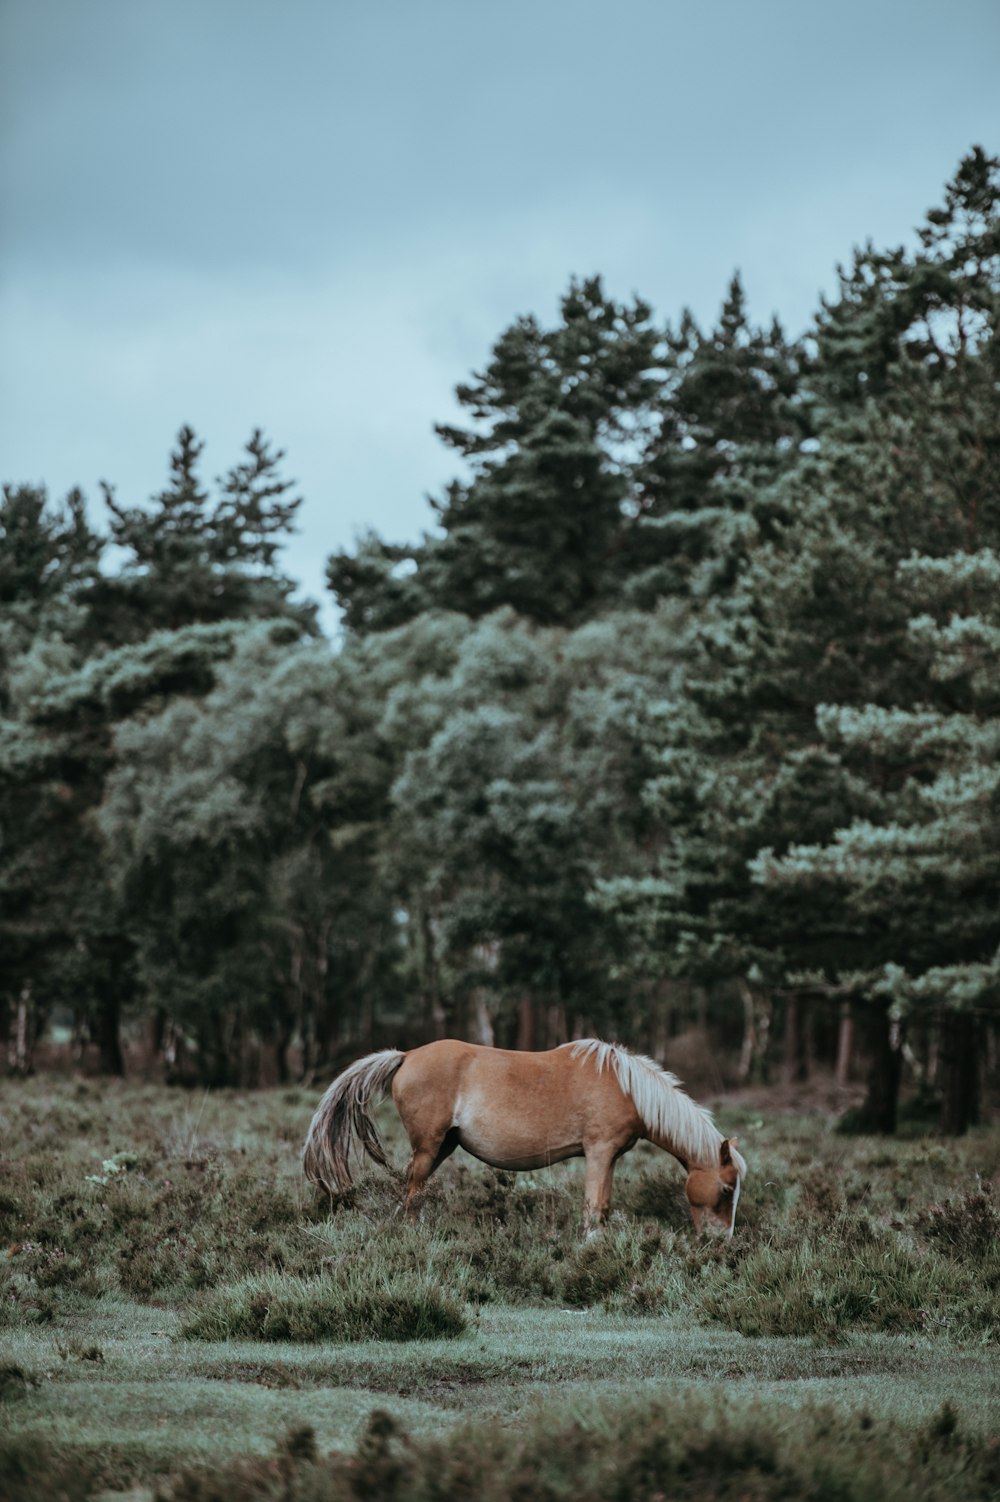 茶色の馬の風景写真